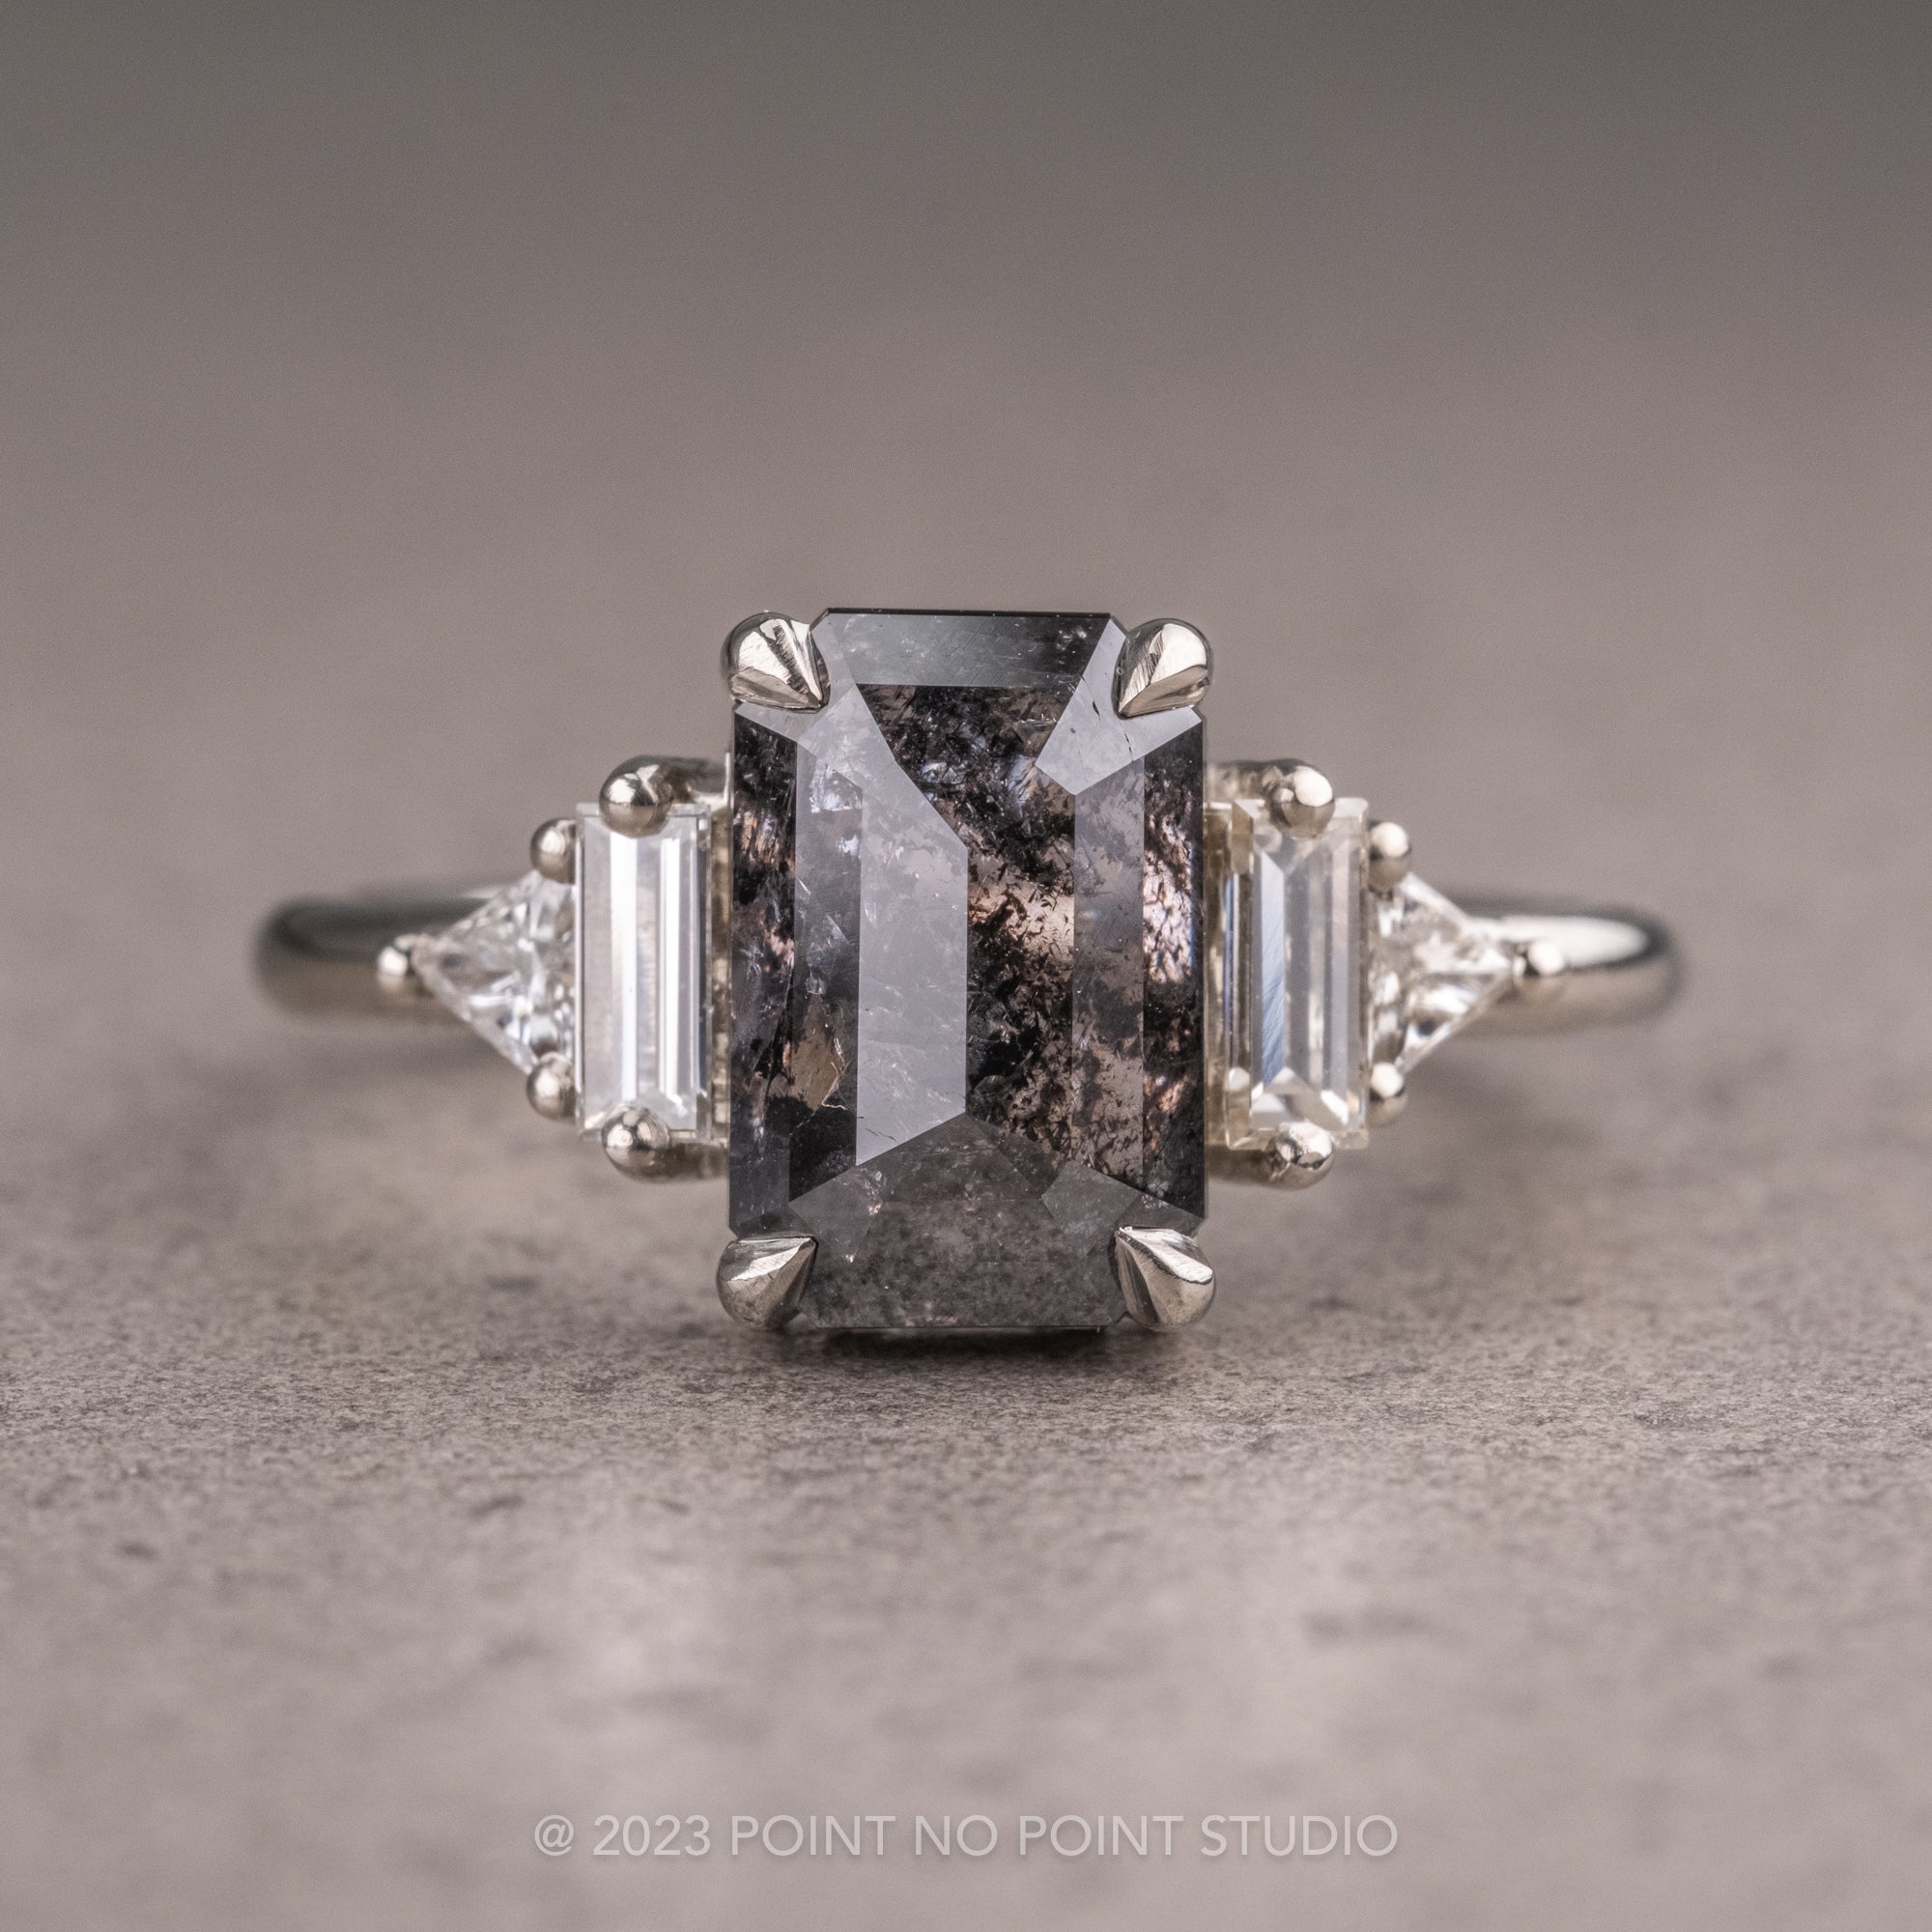 Buy Platinum and Diamond Ring for Men Online | ORRA